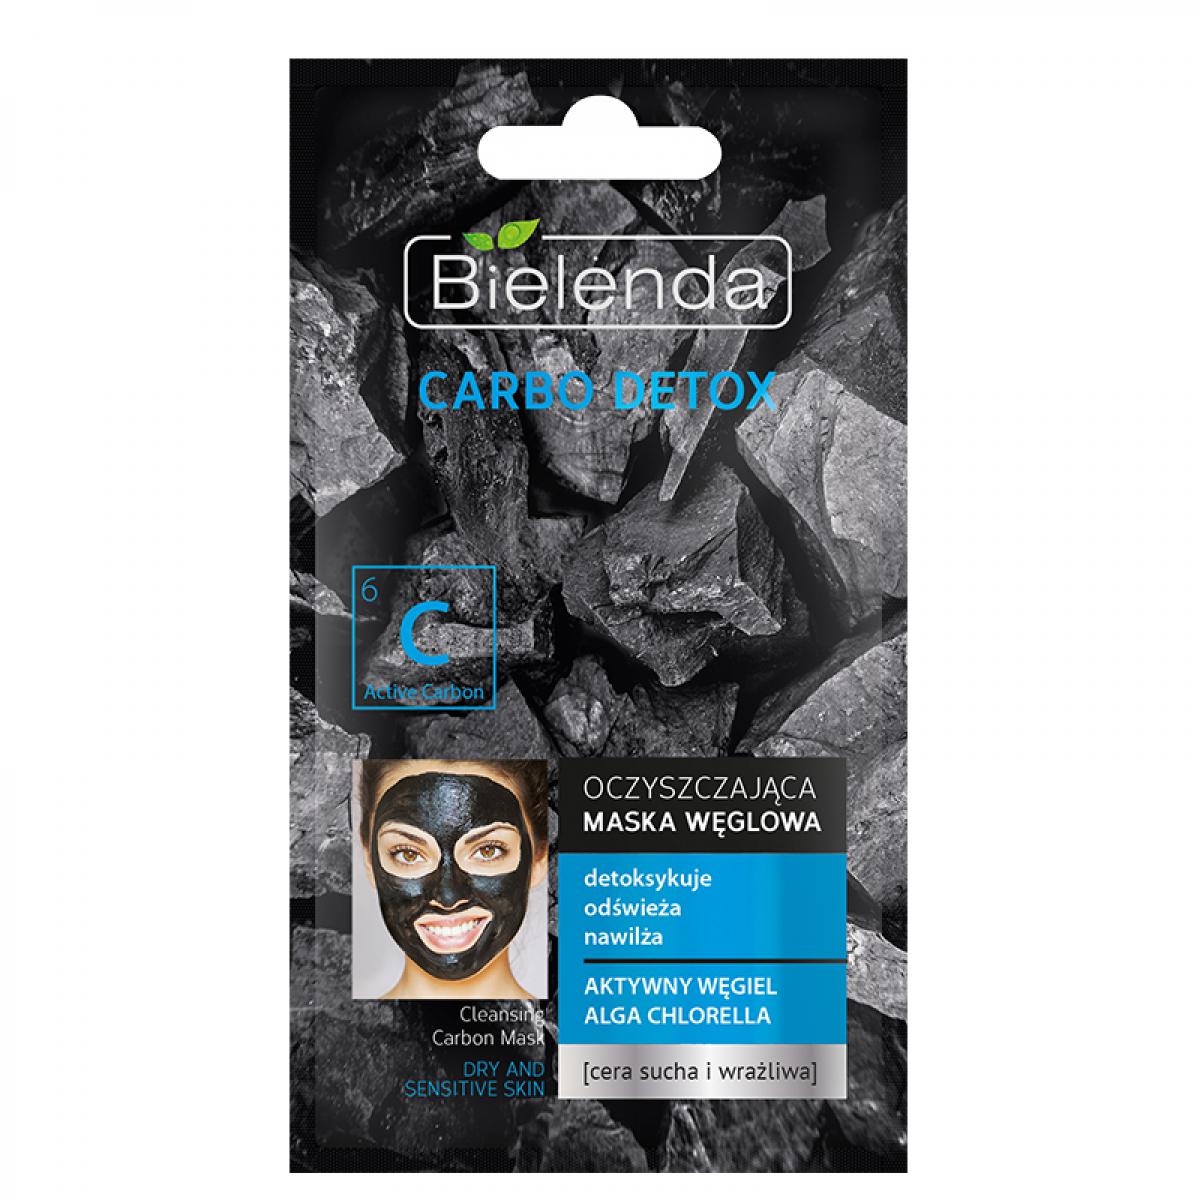 ماسک پاکسازی کننده زغال مناسب پوستهای خشک و حساس - Bielenda Carbo Detox Cleansing Masque For Dry And Sensitive Skin 8gr